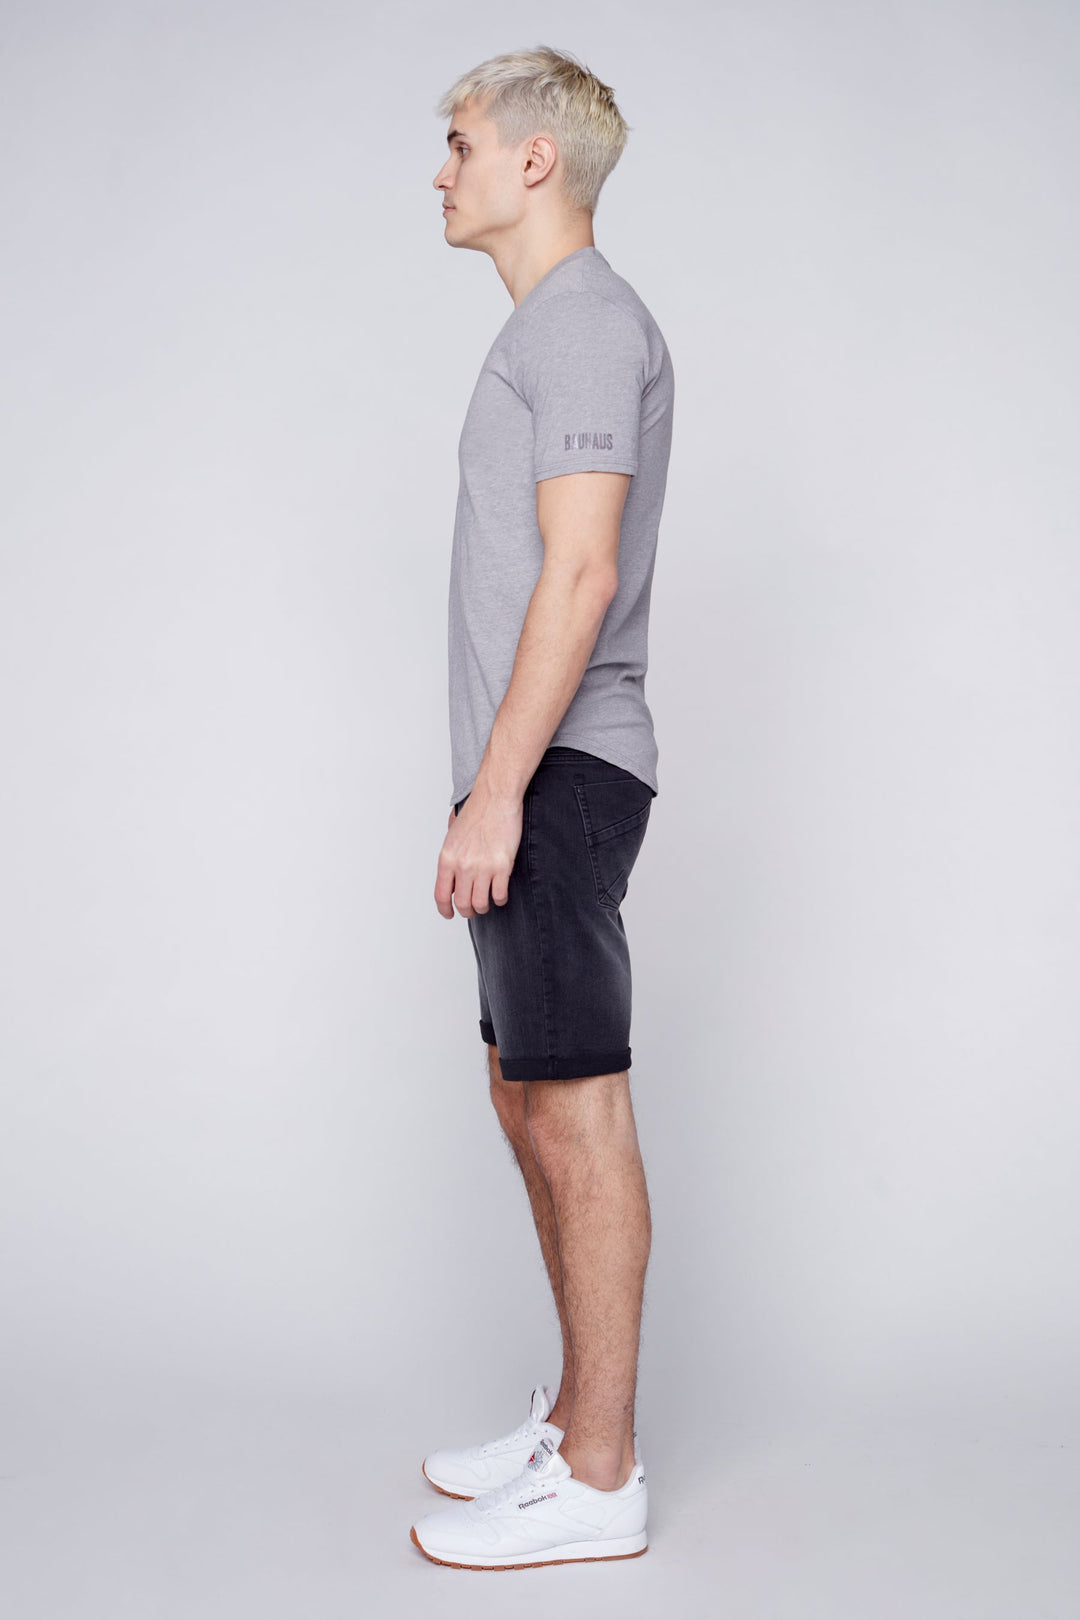 LENNON - Mens Rolled-Up Shorts - Vintage Black